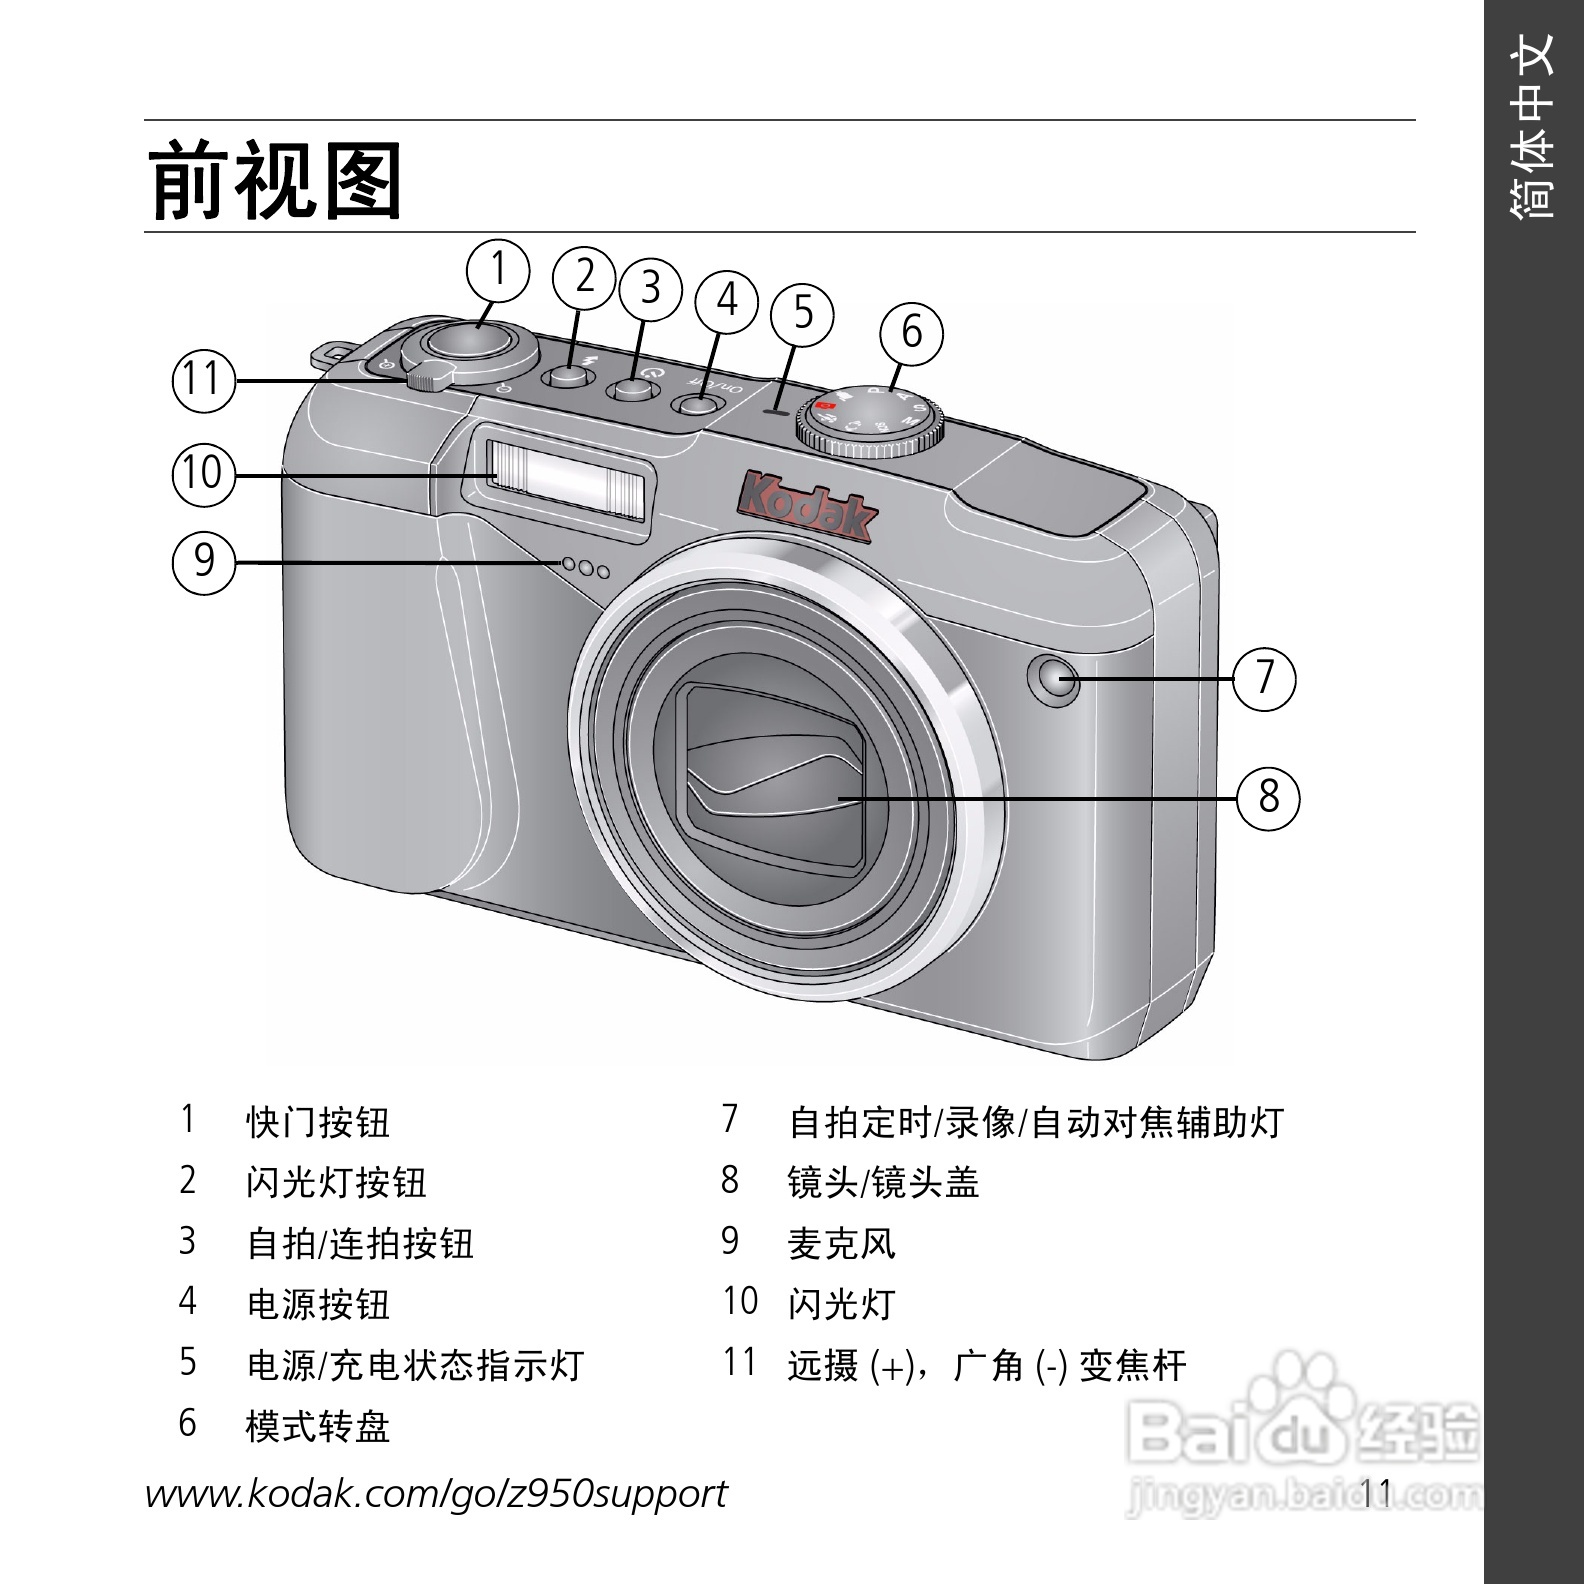 柯达z950数码相机使用说明书:[2]